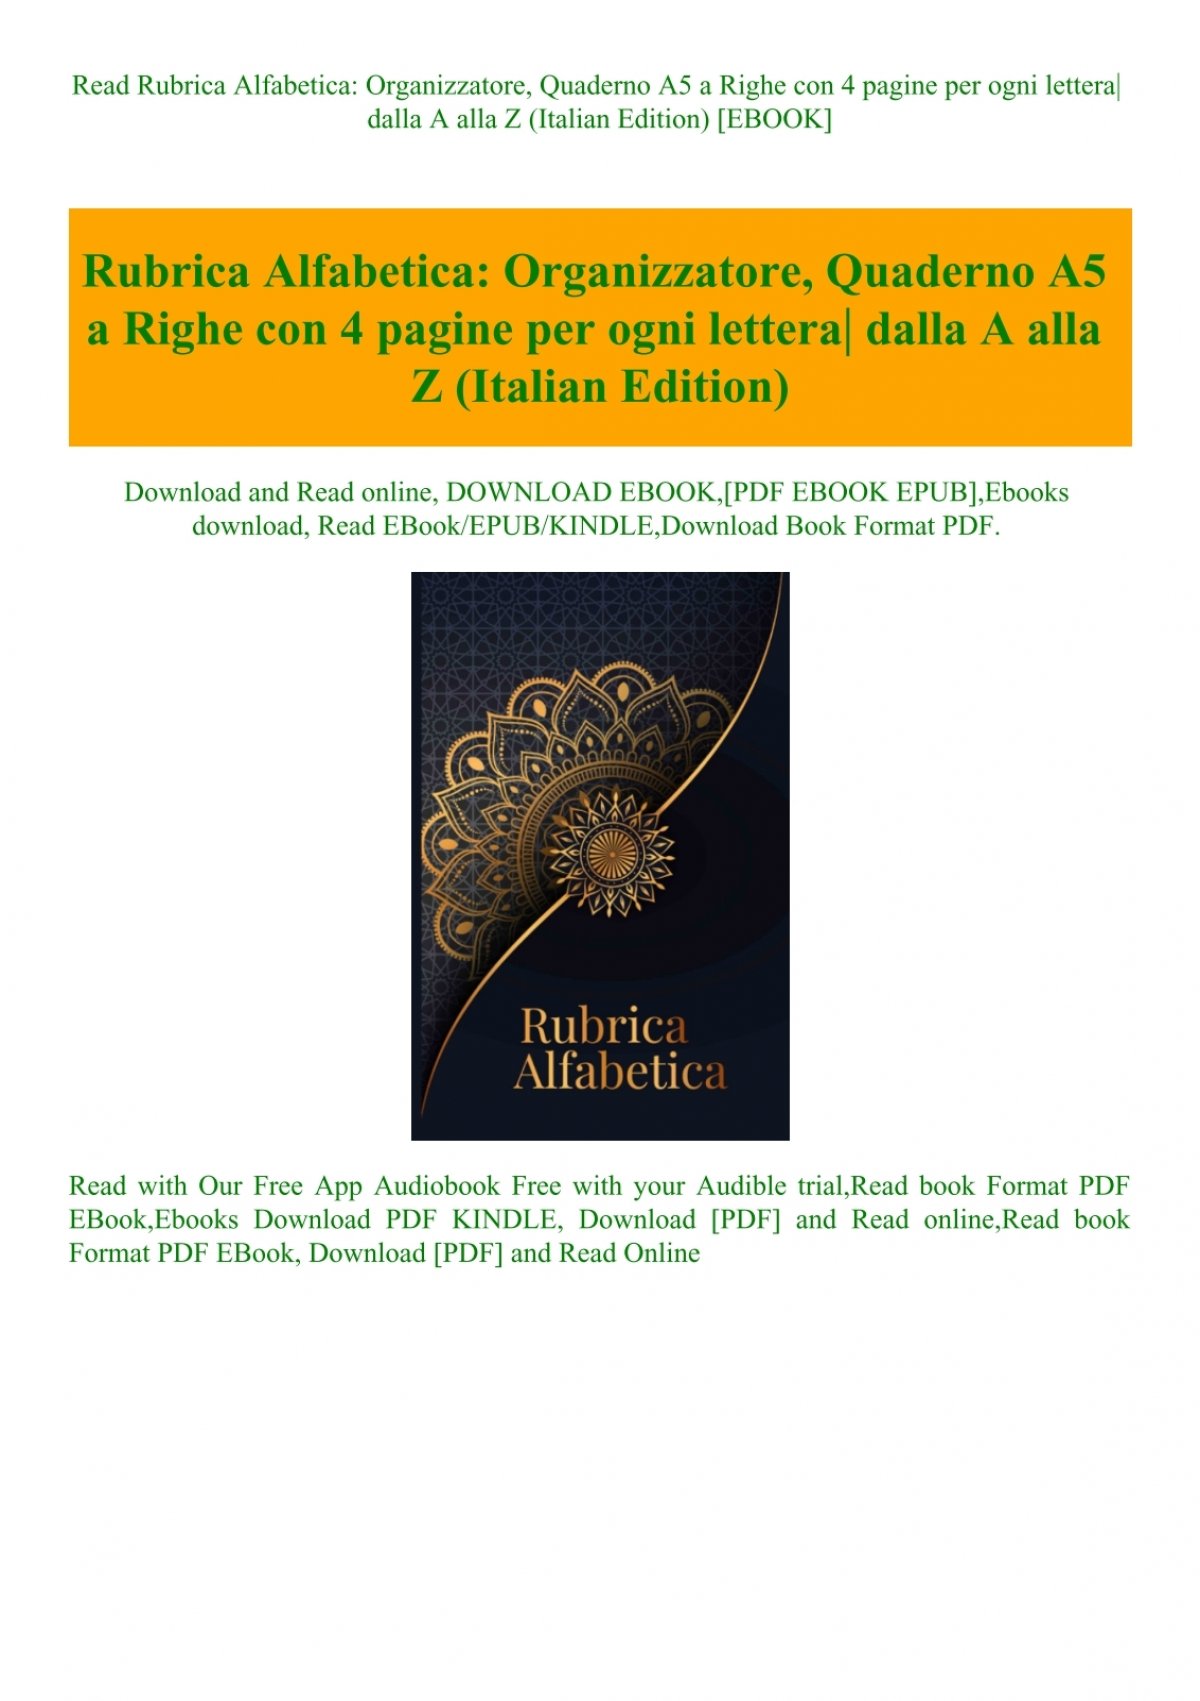 Read Rubrica Alfabetica Organizzatore Quaderno A5 a Righe con 4 pagine per  ogni lettera dalla A alla Z (Italian Edition) [EBOOK]